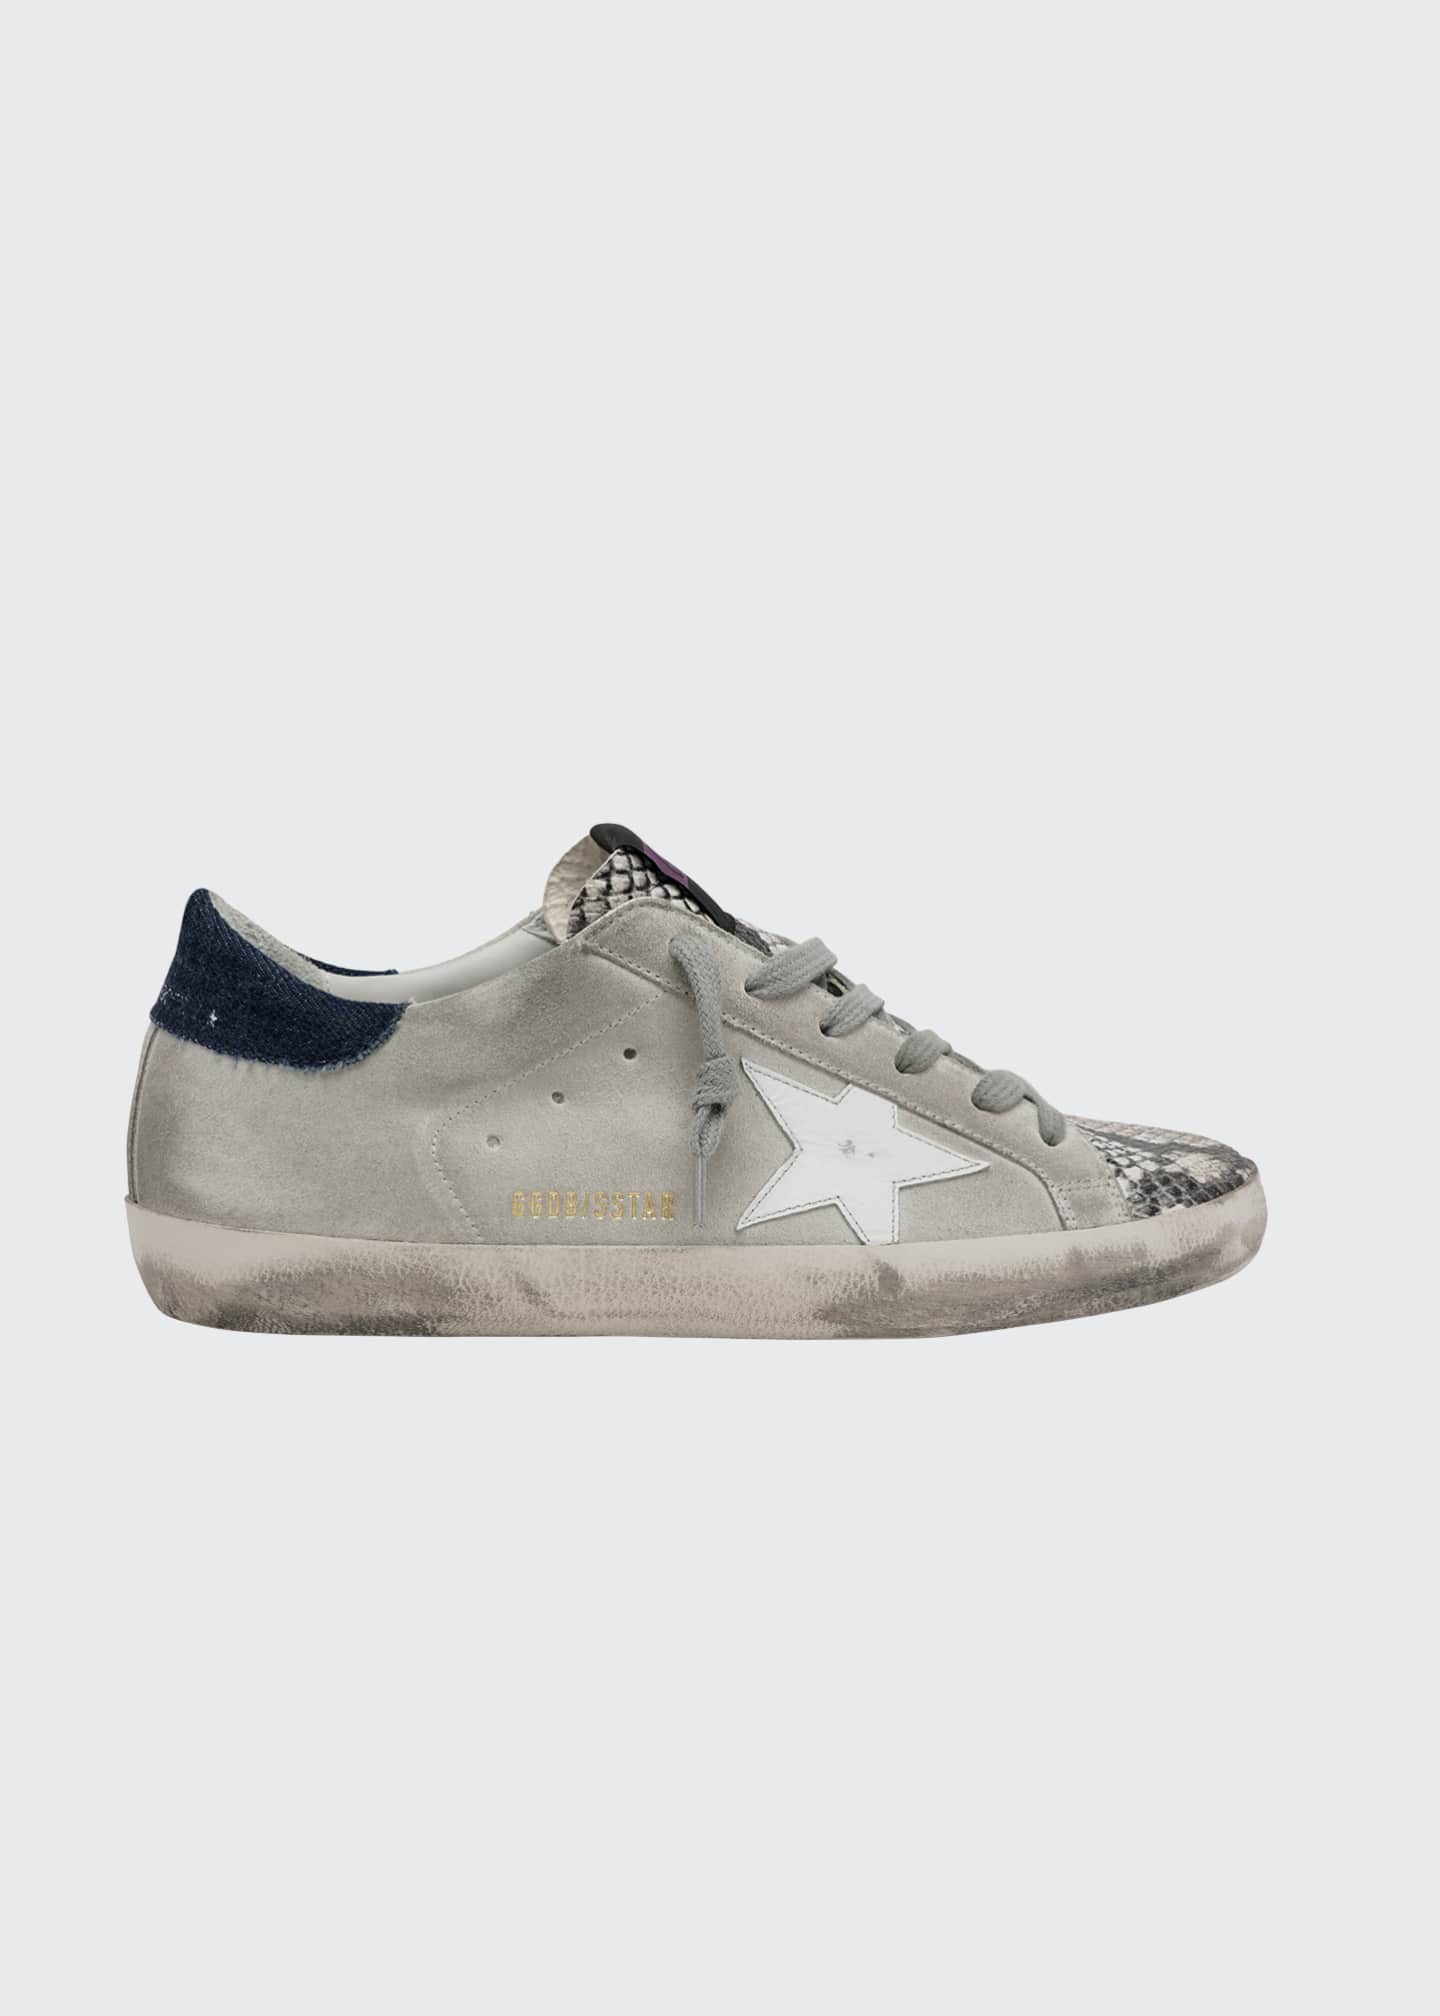 golden goose sneakers bergdorf